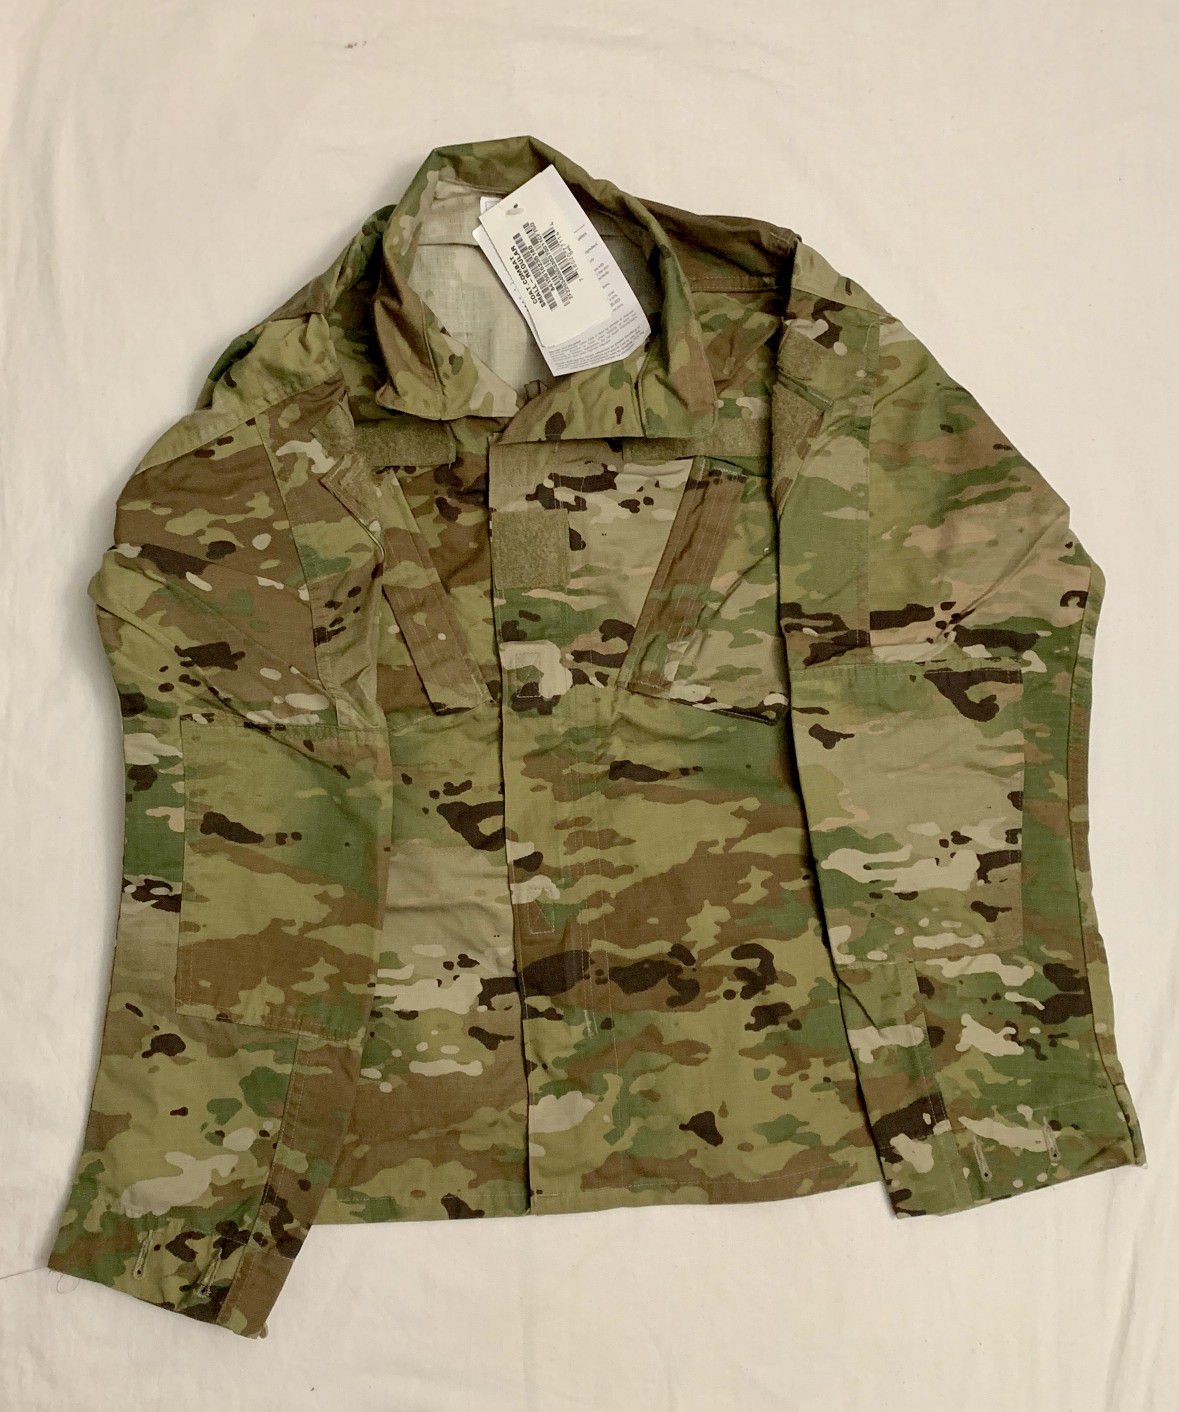 US Army Uniform